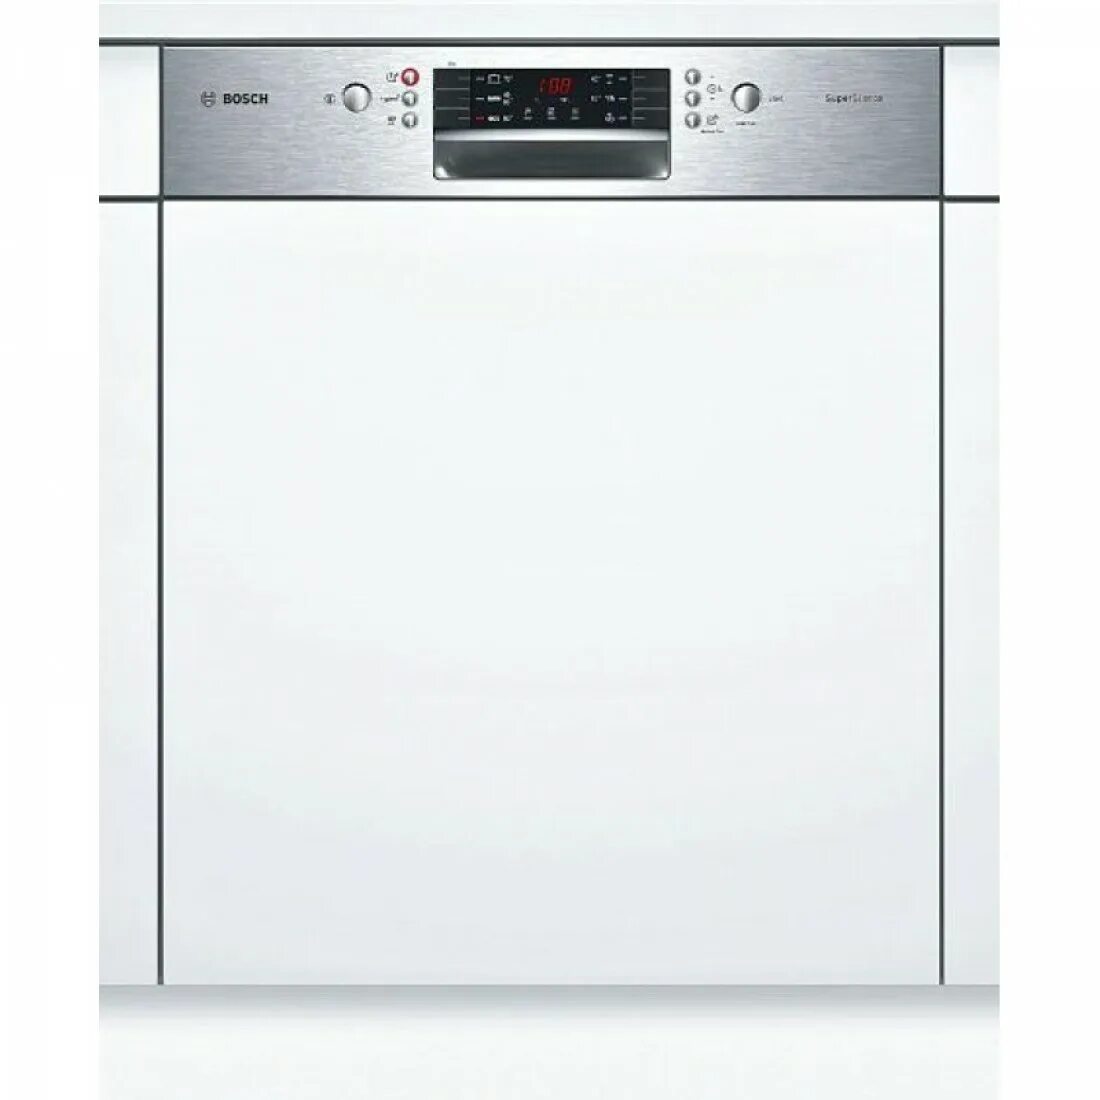 Посудомоечная машина Siemens SN 536s01 ke. Посудомоечная машина Bosch SMI 40m65. Bosch SMI 46ks00 t. Посудомоечная машина Bosch SMI 46ks01 e. Купить bosch 25